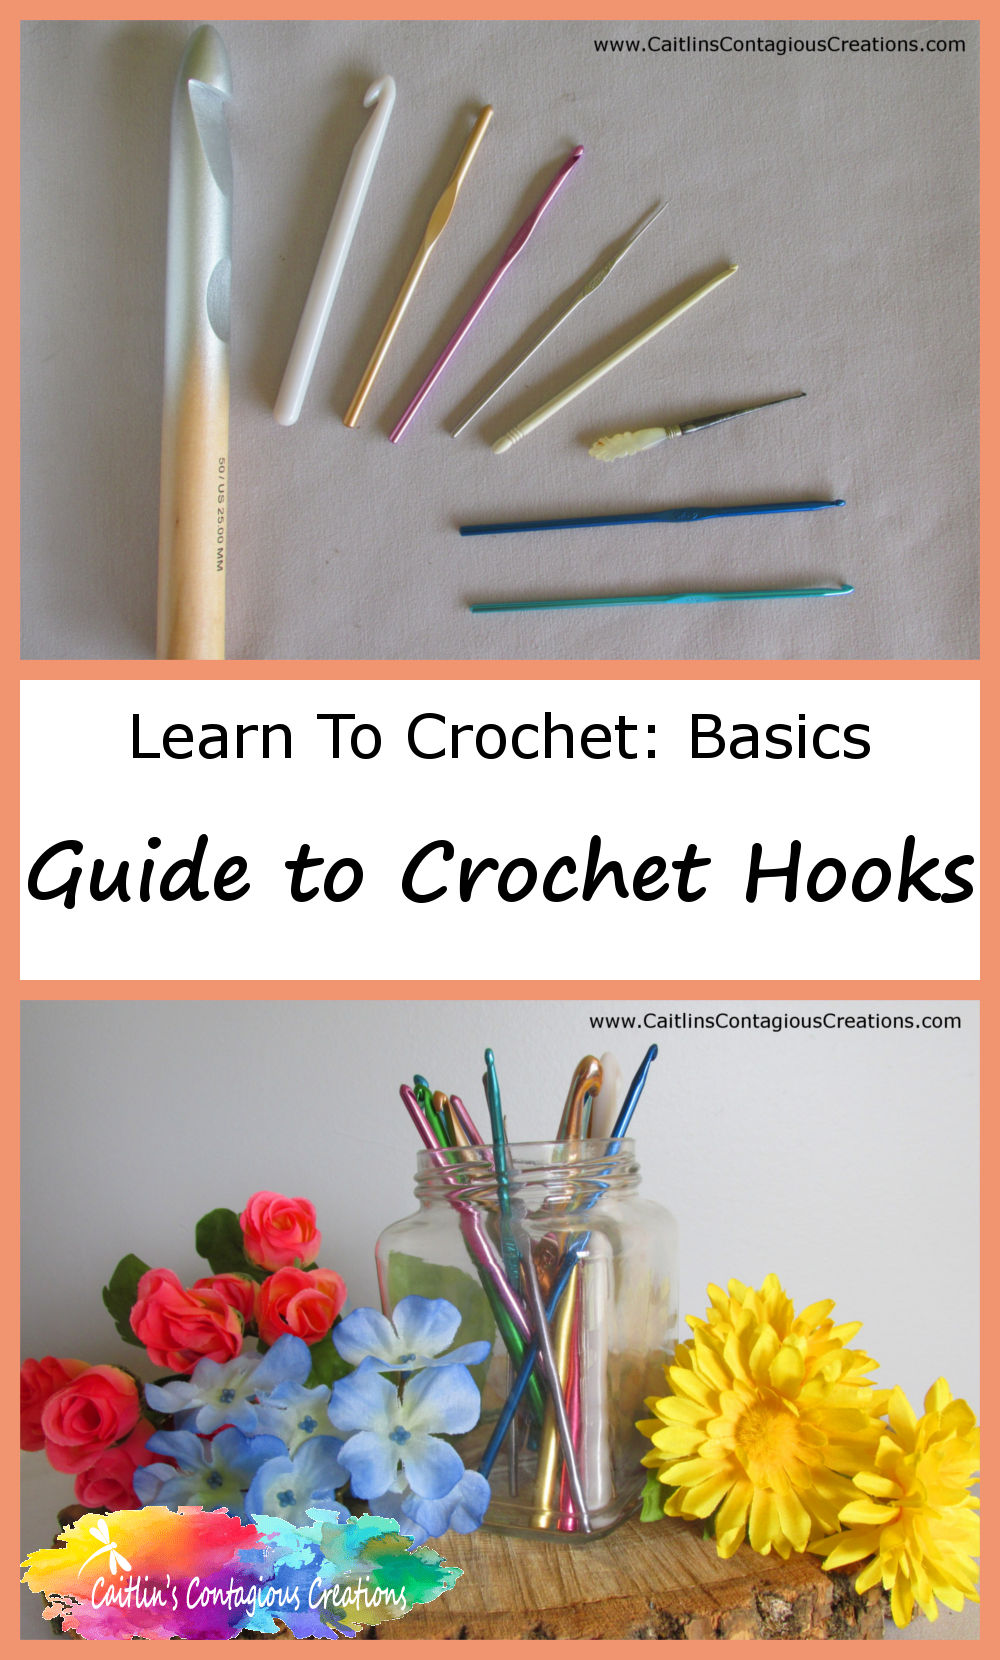 Radiant Crochet Hooks, crochet needles